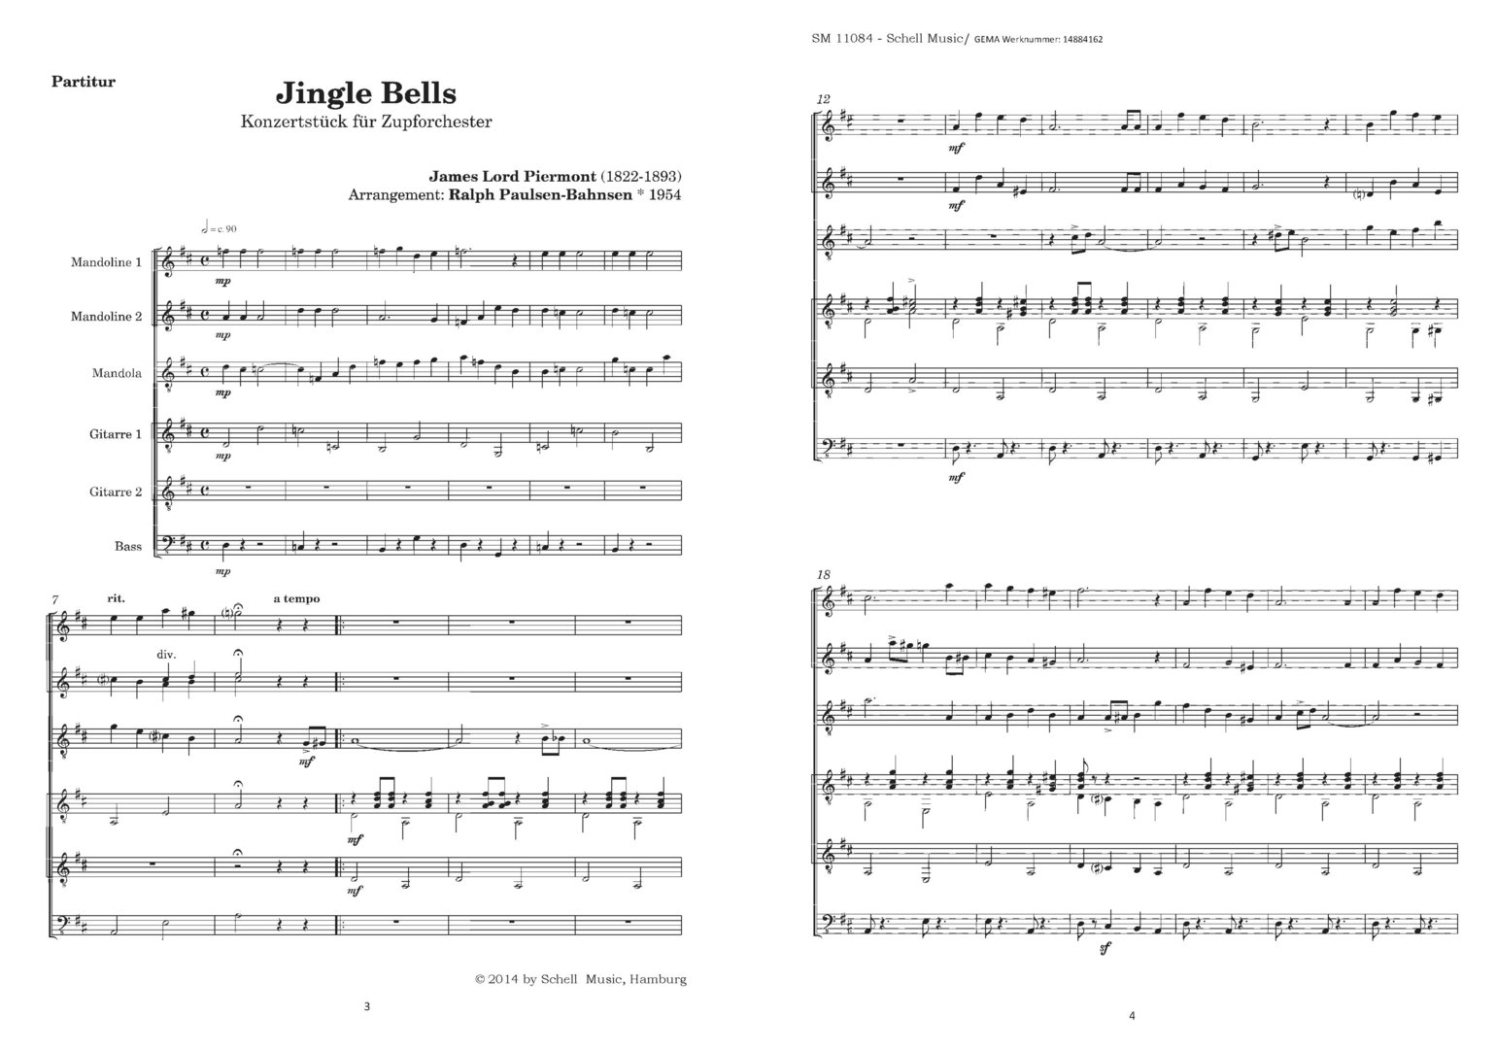 Jingle-Bells-ZupfOrch-_PSt_-_0006.JPG